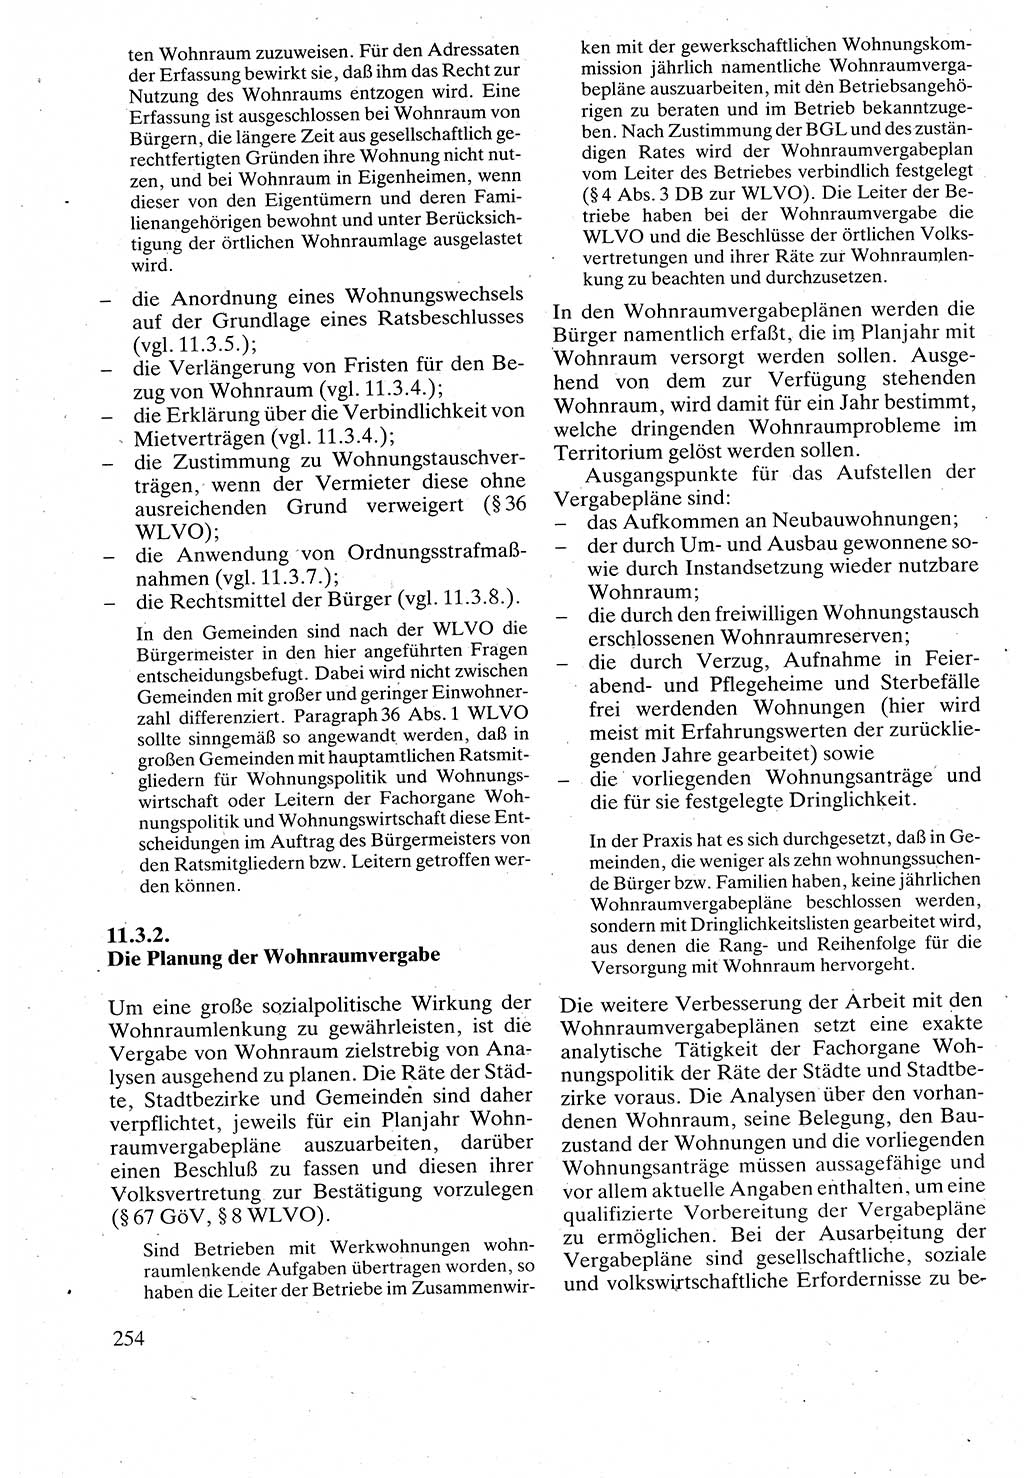 Verwaltungsrecht [Deutsche Demokratische Republik (DDR)], Lehrbuch 1988, Seite 254 (Verw.-R. DDR Lb. 1988, S. 254)